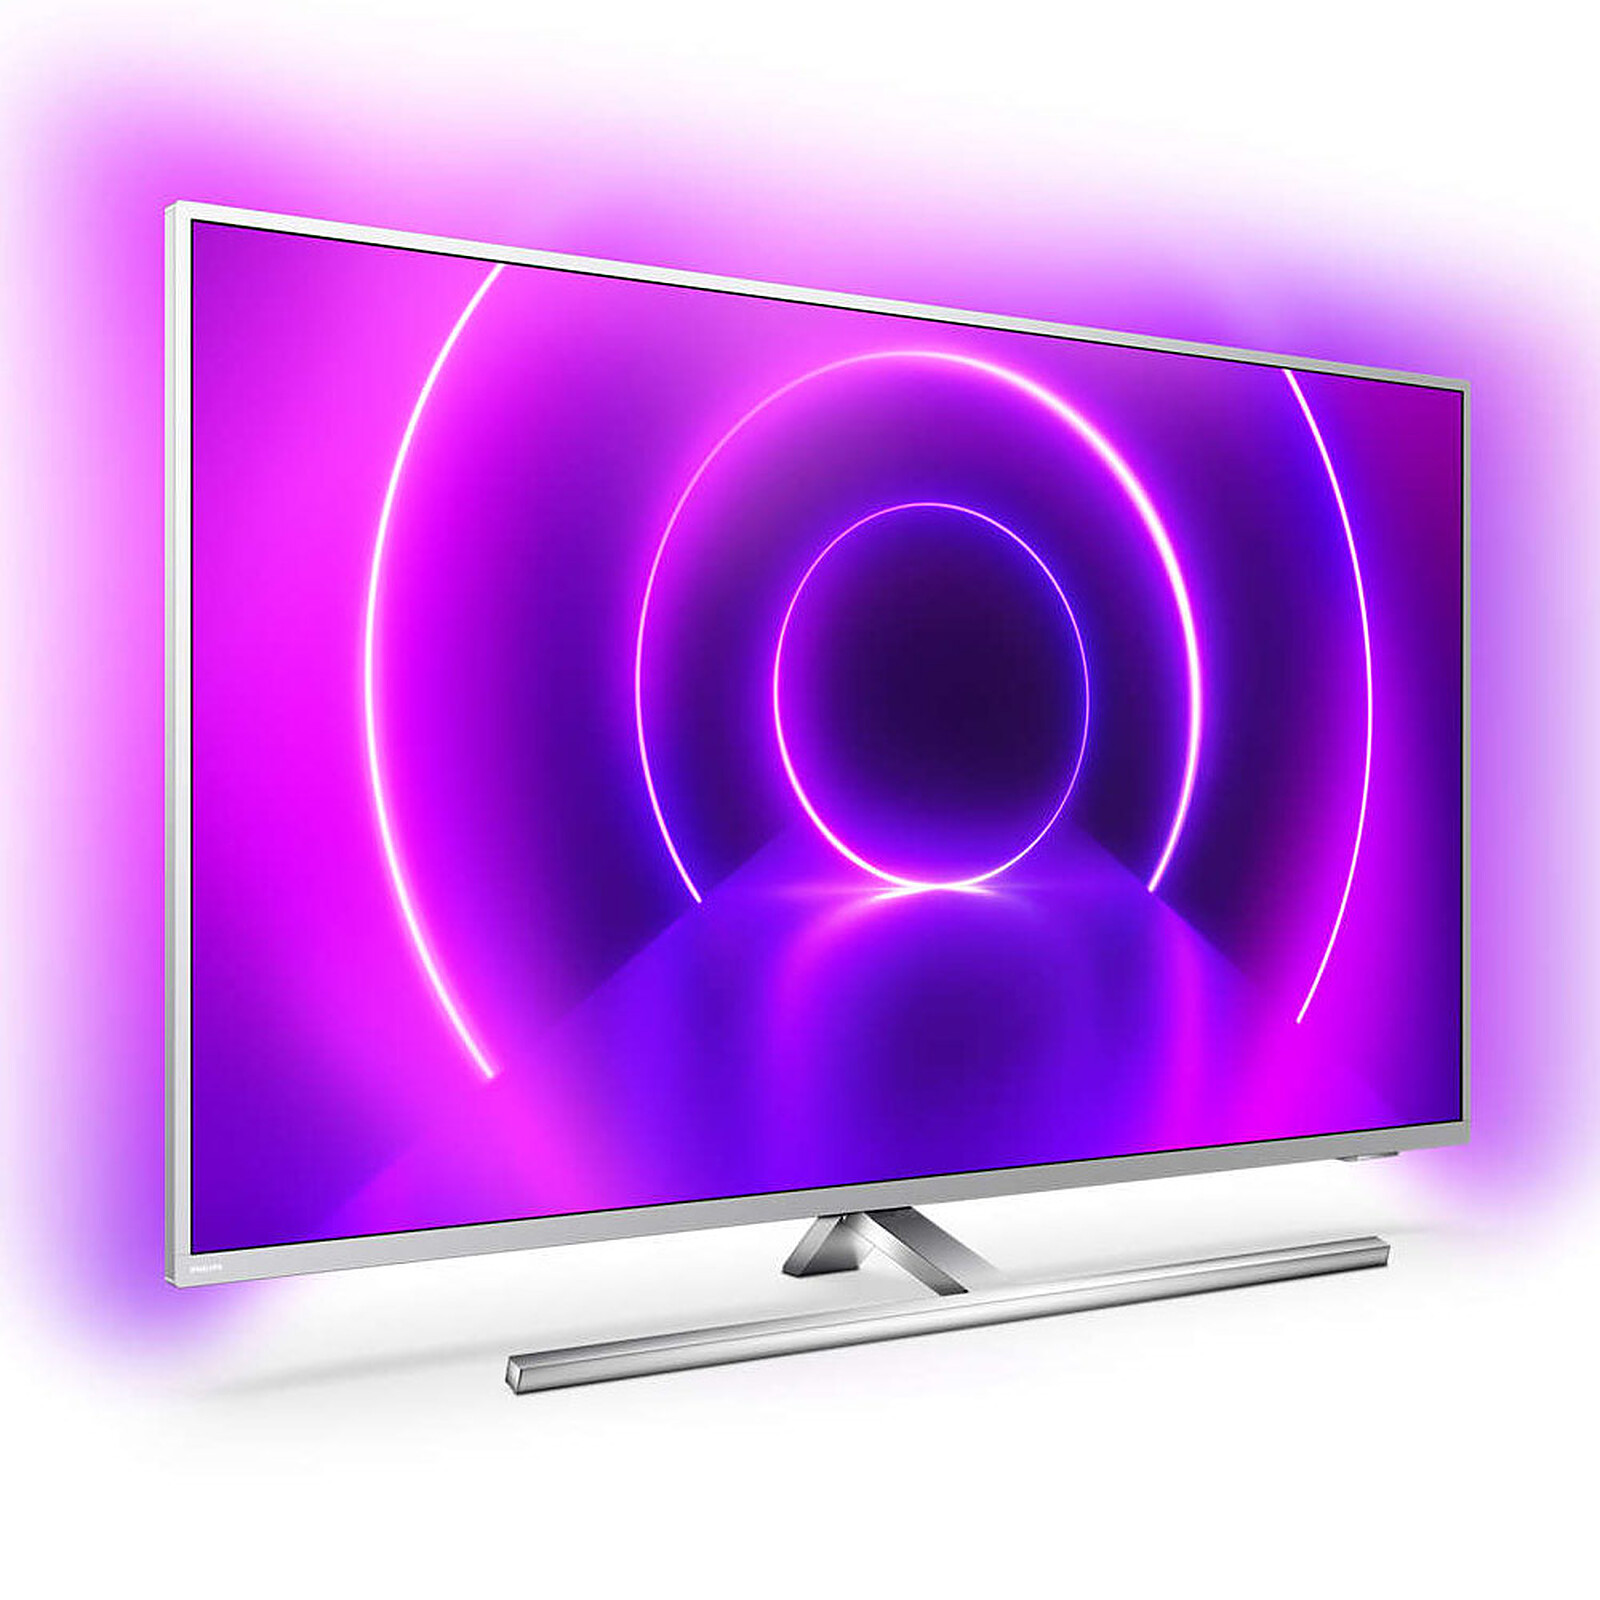 TV Mini LED Ambilight 65 (165,1 cm) Philips 65PML9008/12, 4K UHD, Smart TV